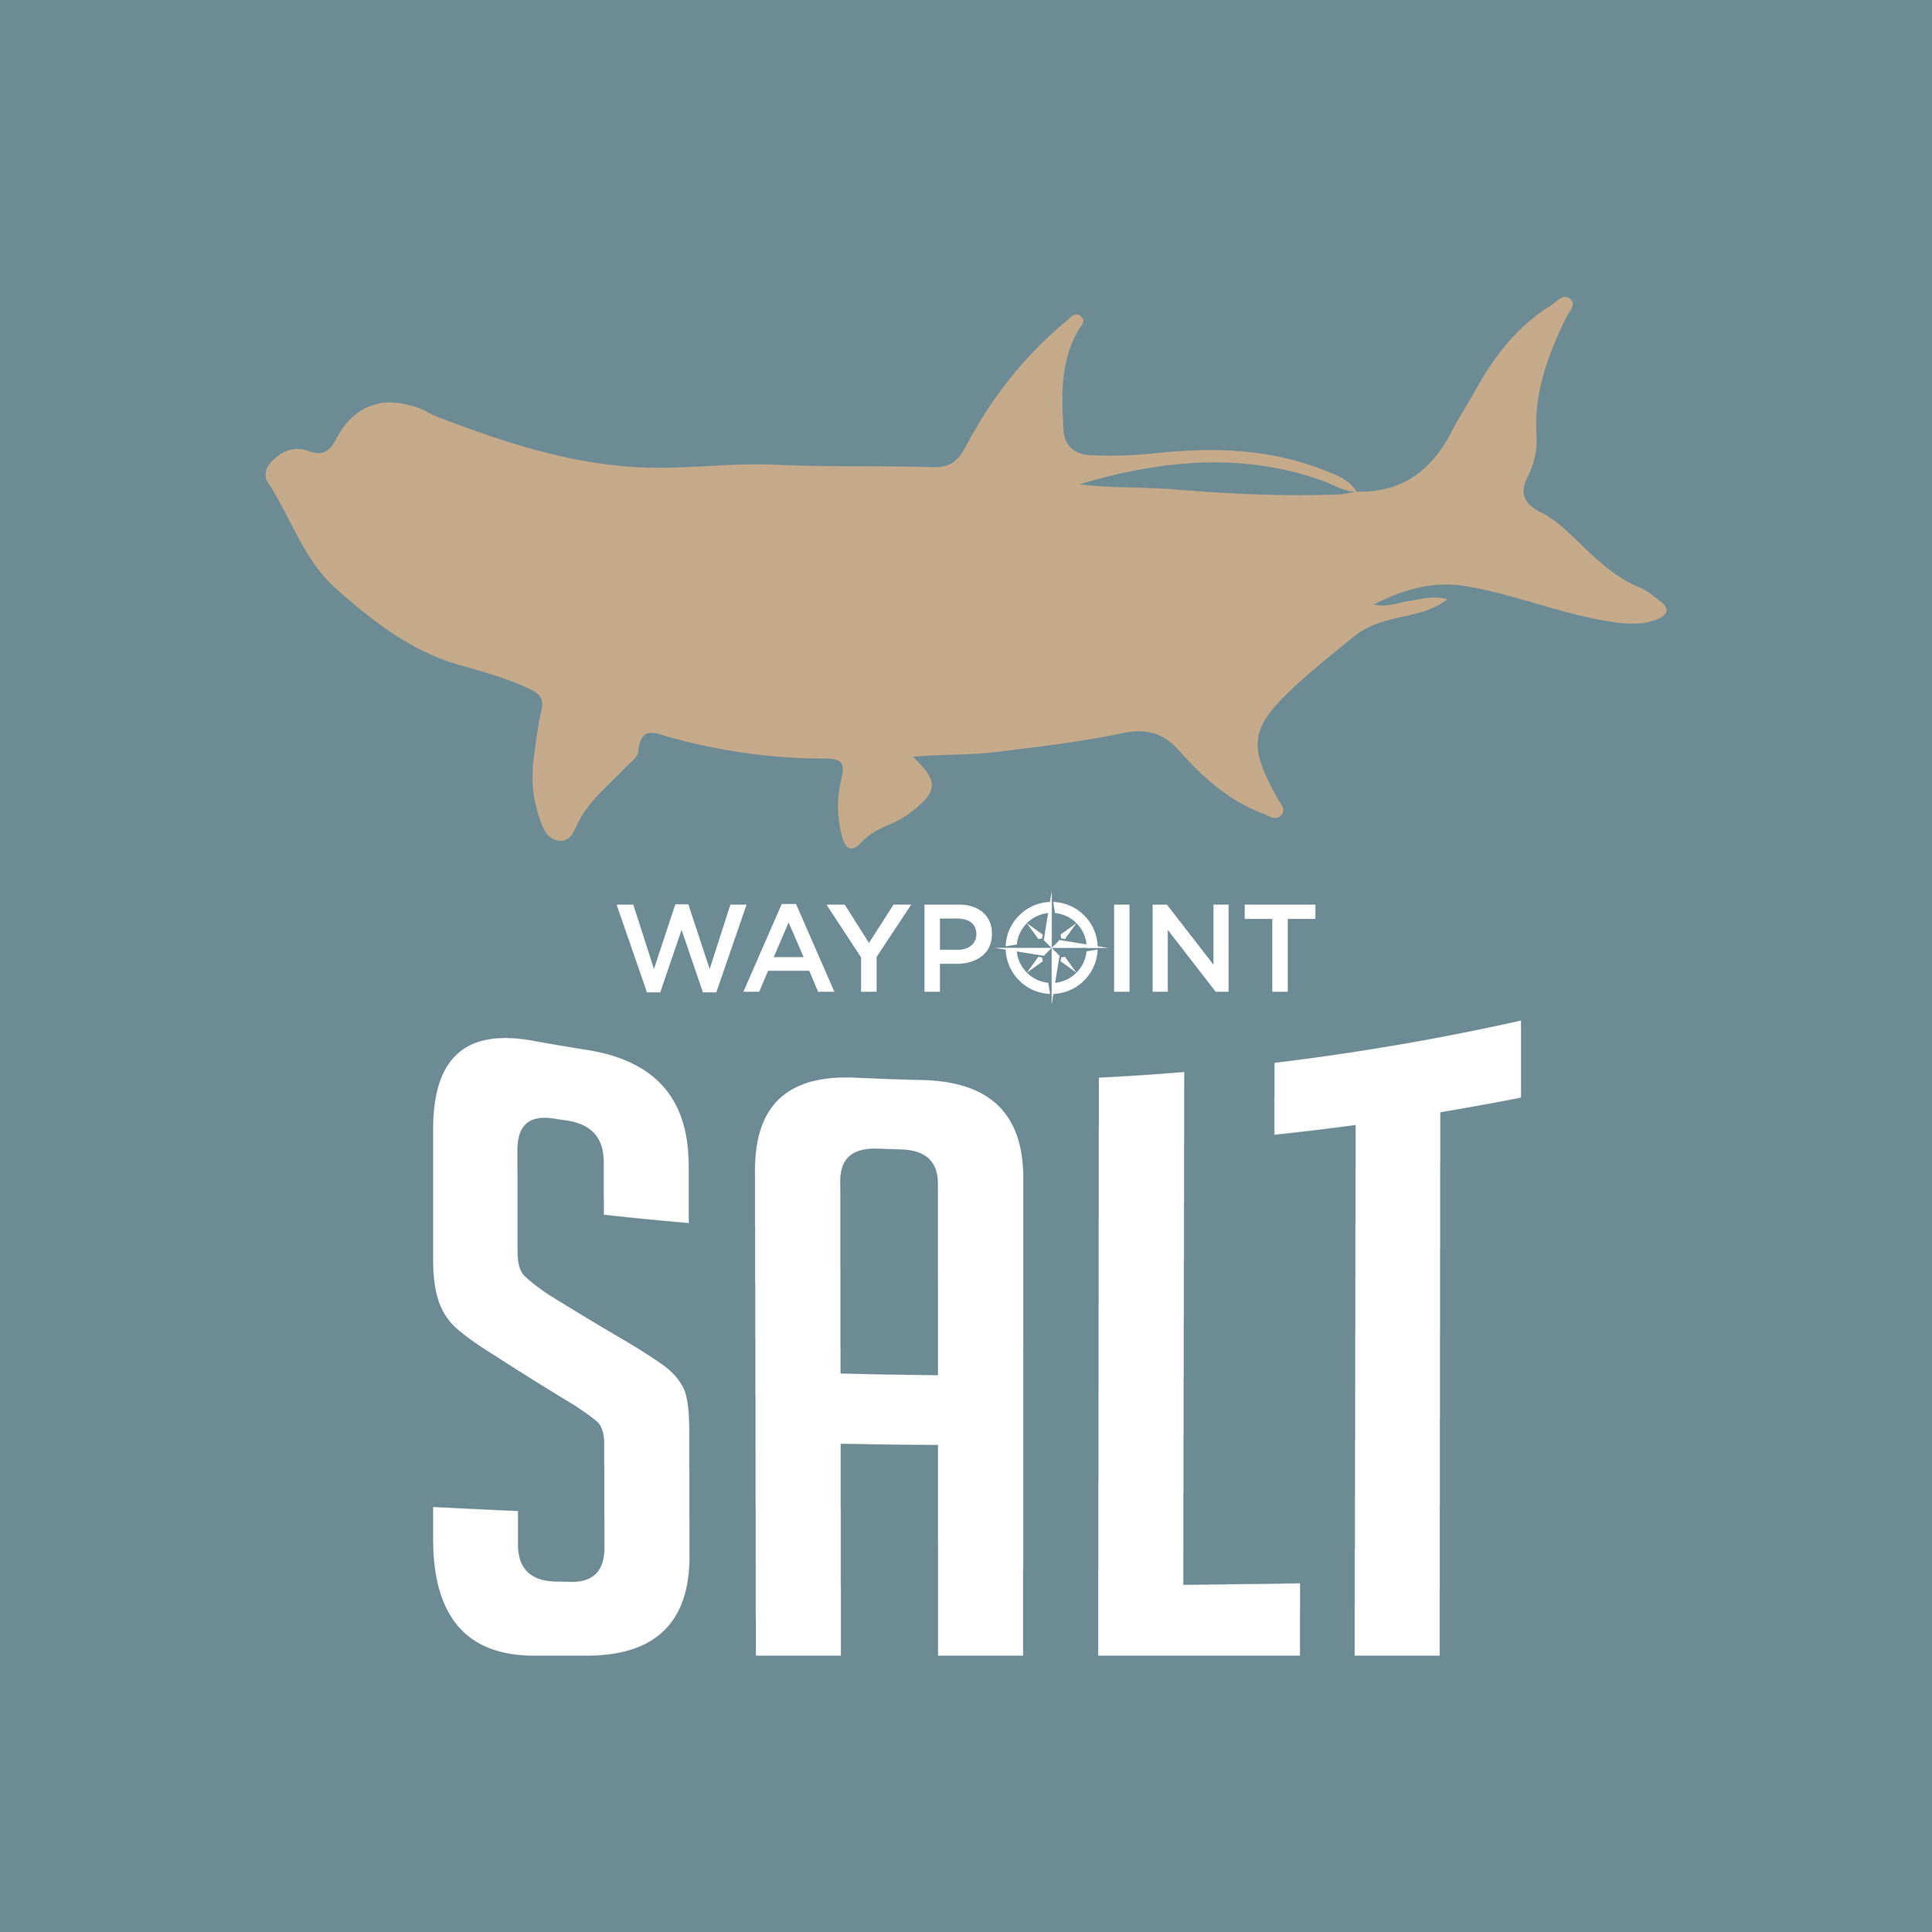 waypoint saltwater community @waypointsalt on instagram